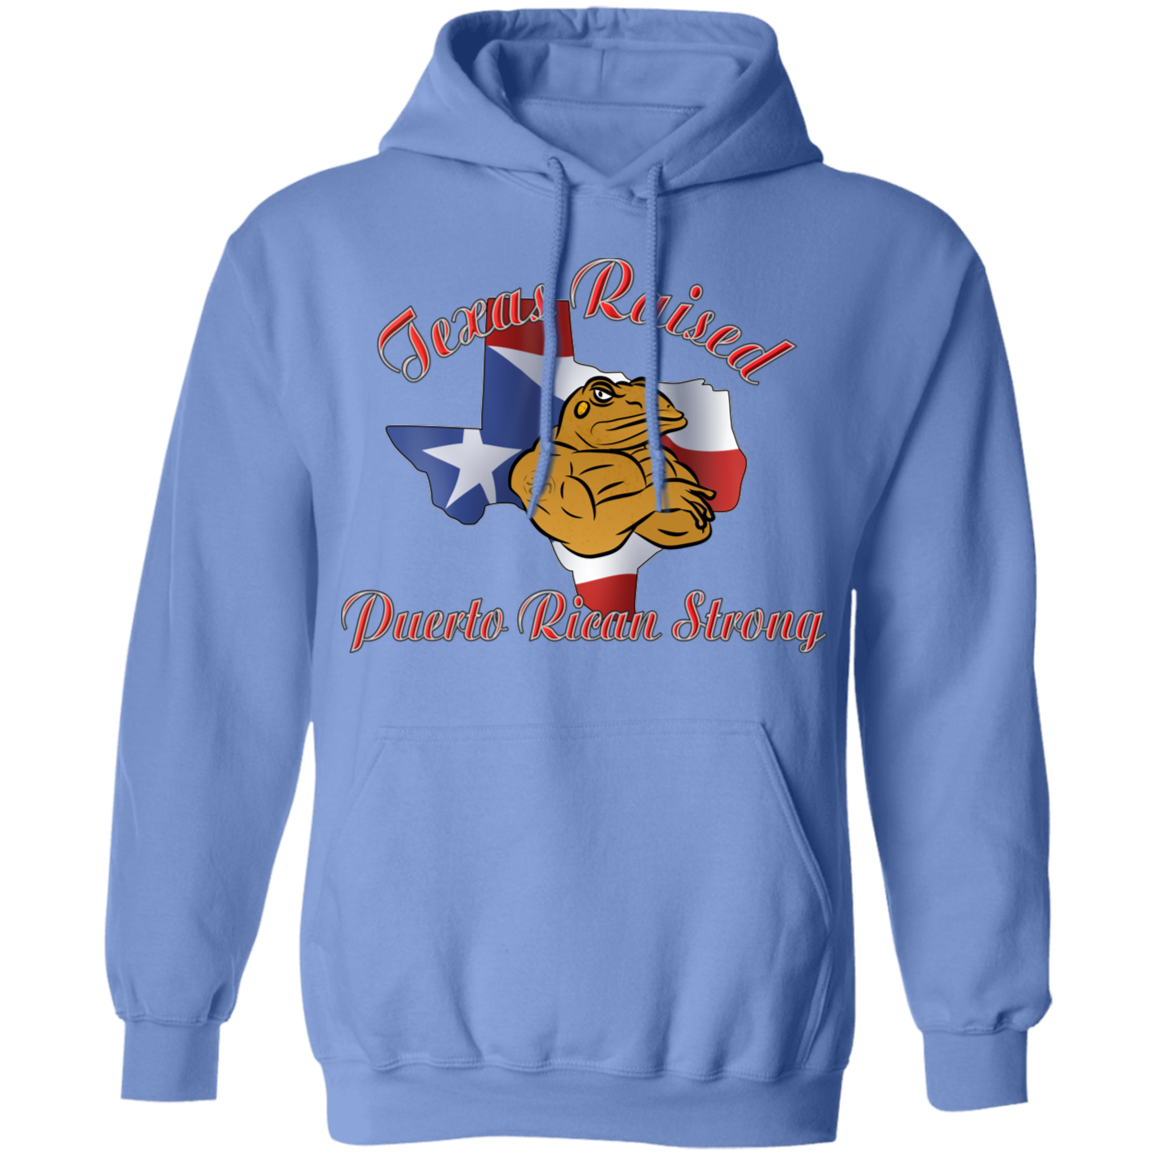 Texas Raised PR Strong Pullover Hoodie - Puerto Rican Pride